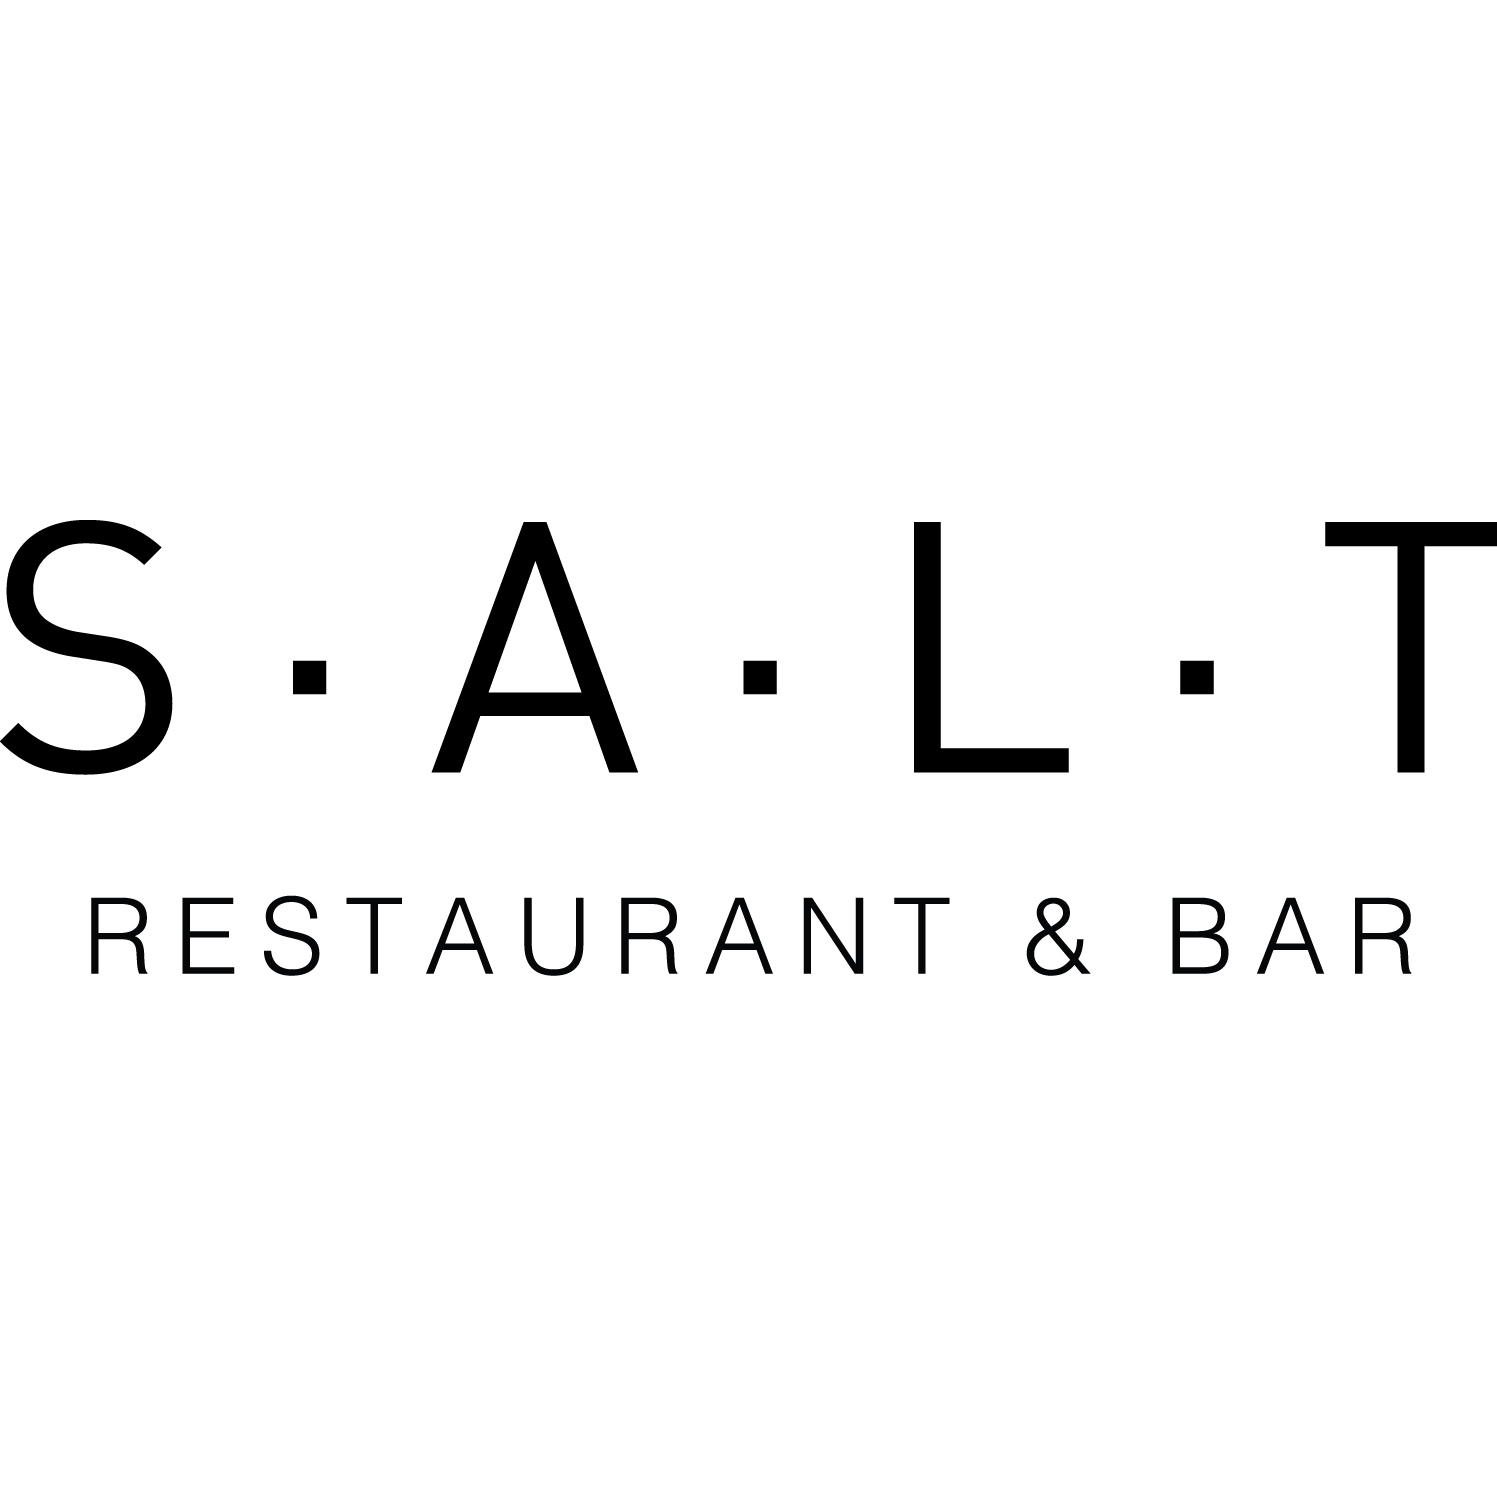 SALT Restaurant & Bar - Marina del Rey, CA 90292 - (424)289-8223 | ShowMeLocal.com